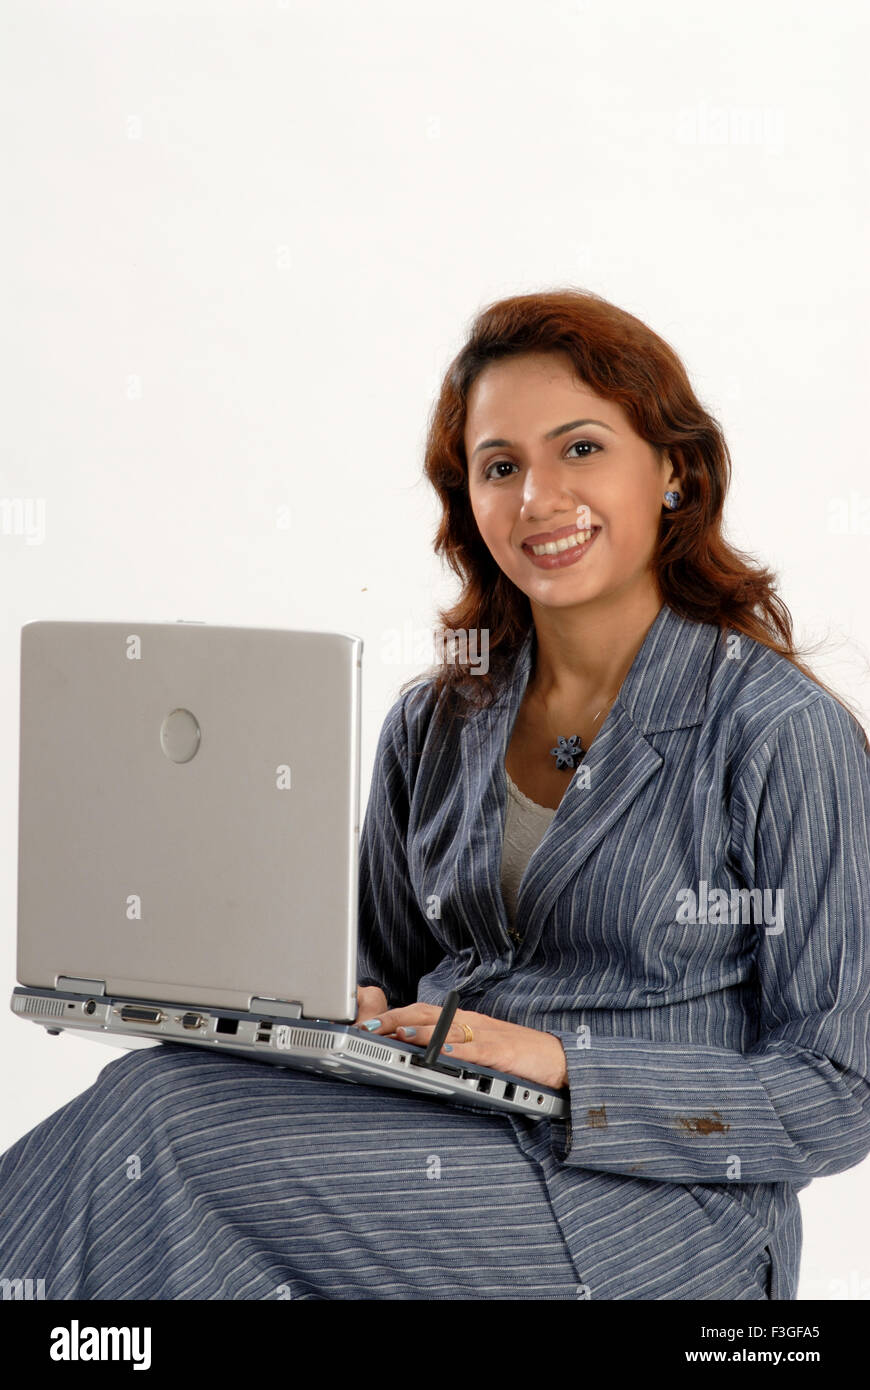 Donna al lavoro su computer portatile - Modello di Rilascio # 682M Foto Stock